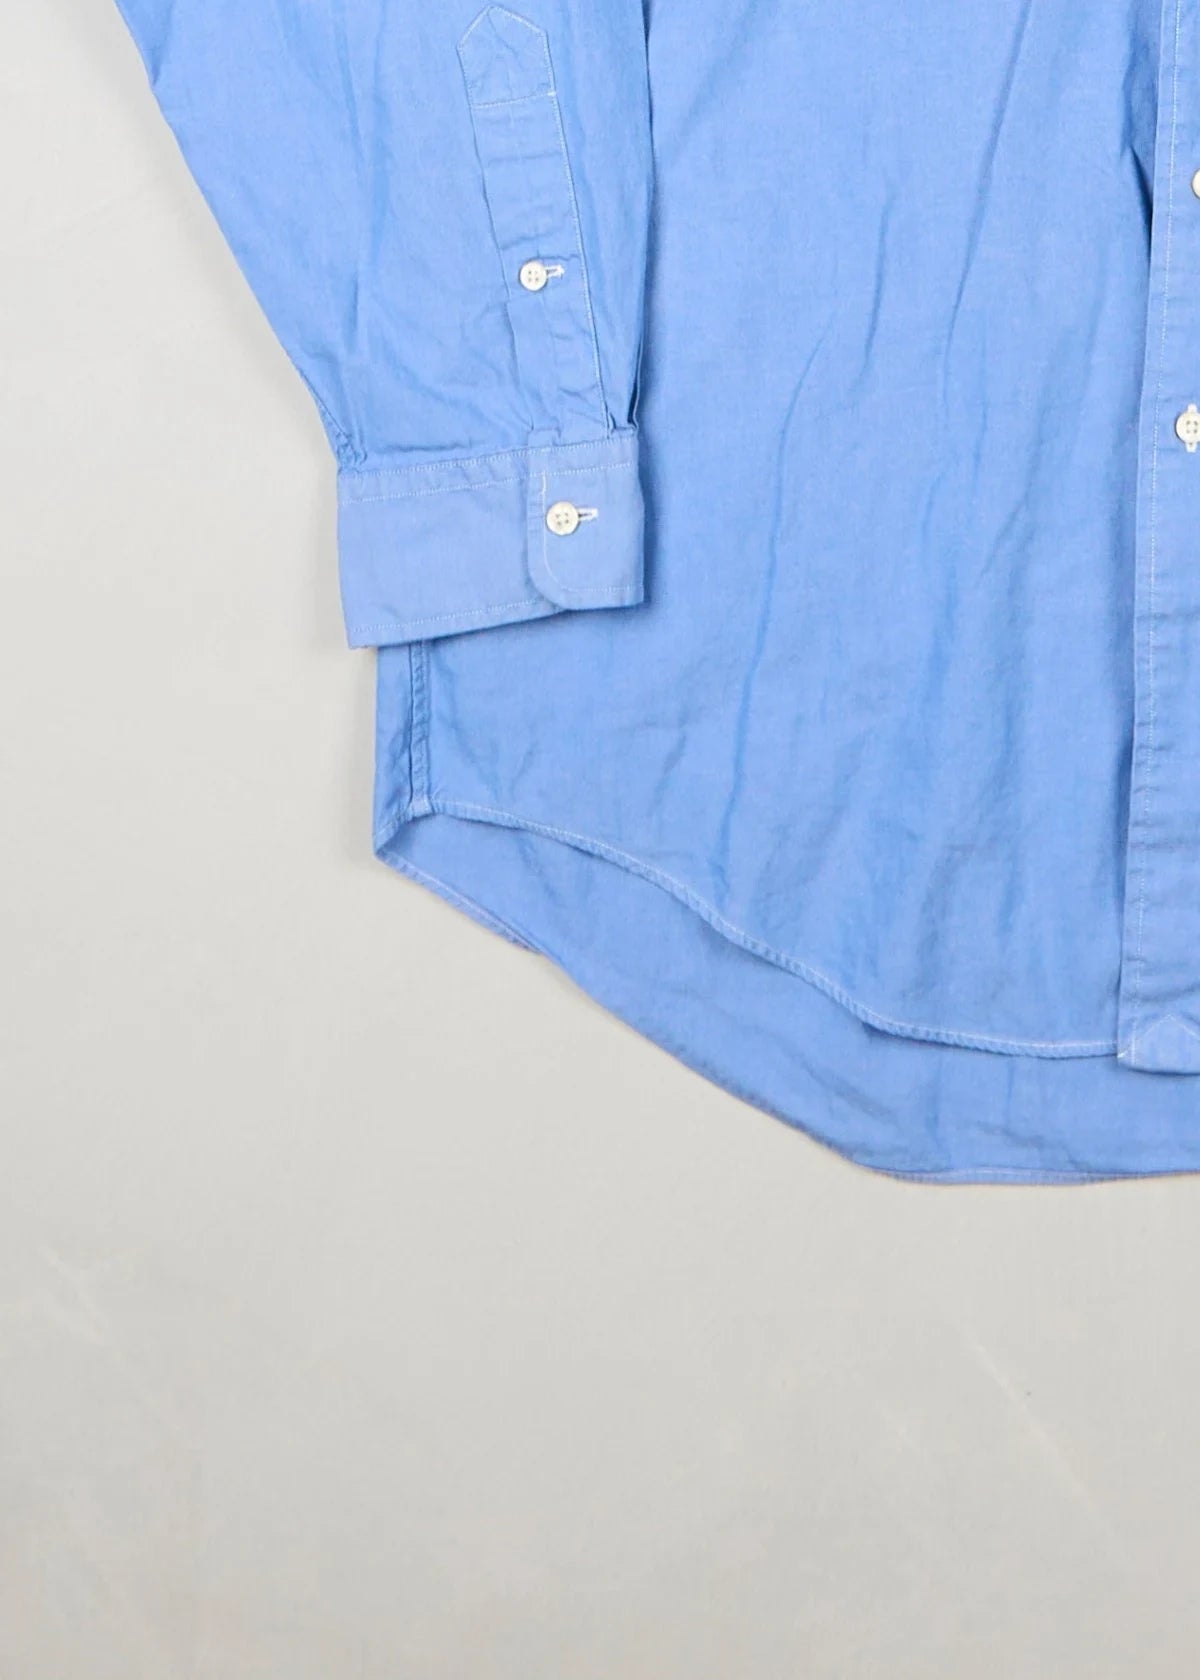 Ralph Lauren - Shirt (L) Bottom Left